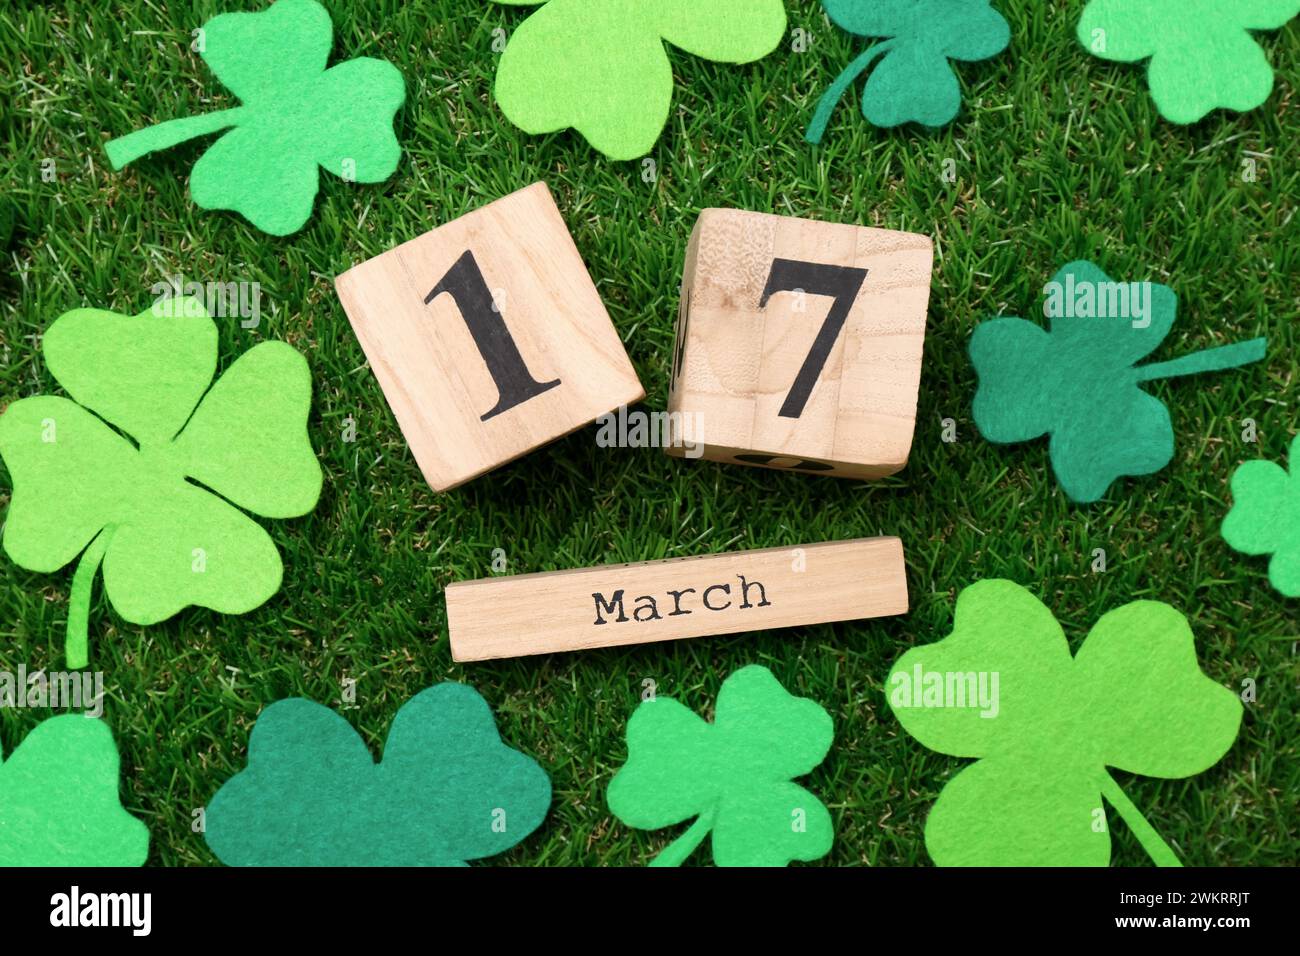 St Giorno di Patrick - 17 marzo. Calendario a blocchi di legno e foglie di trifoglio di feltro su erba verde, stesa piatta Foto Stock